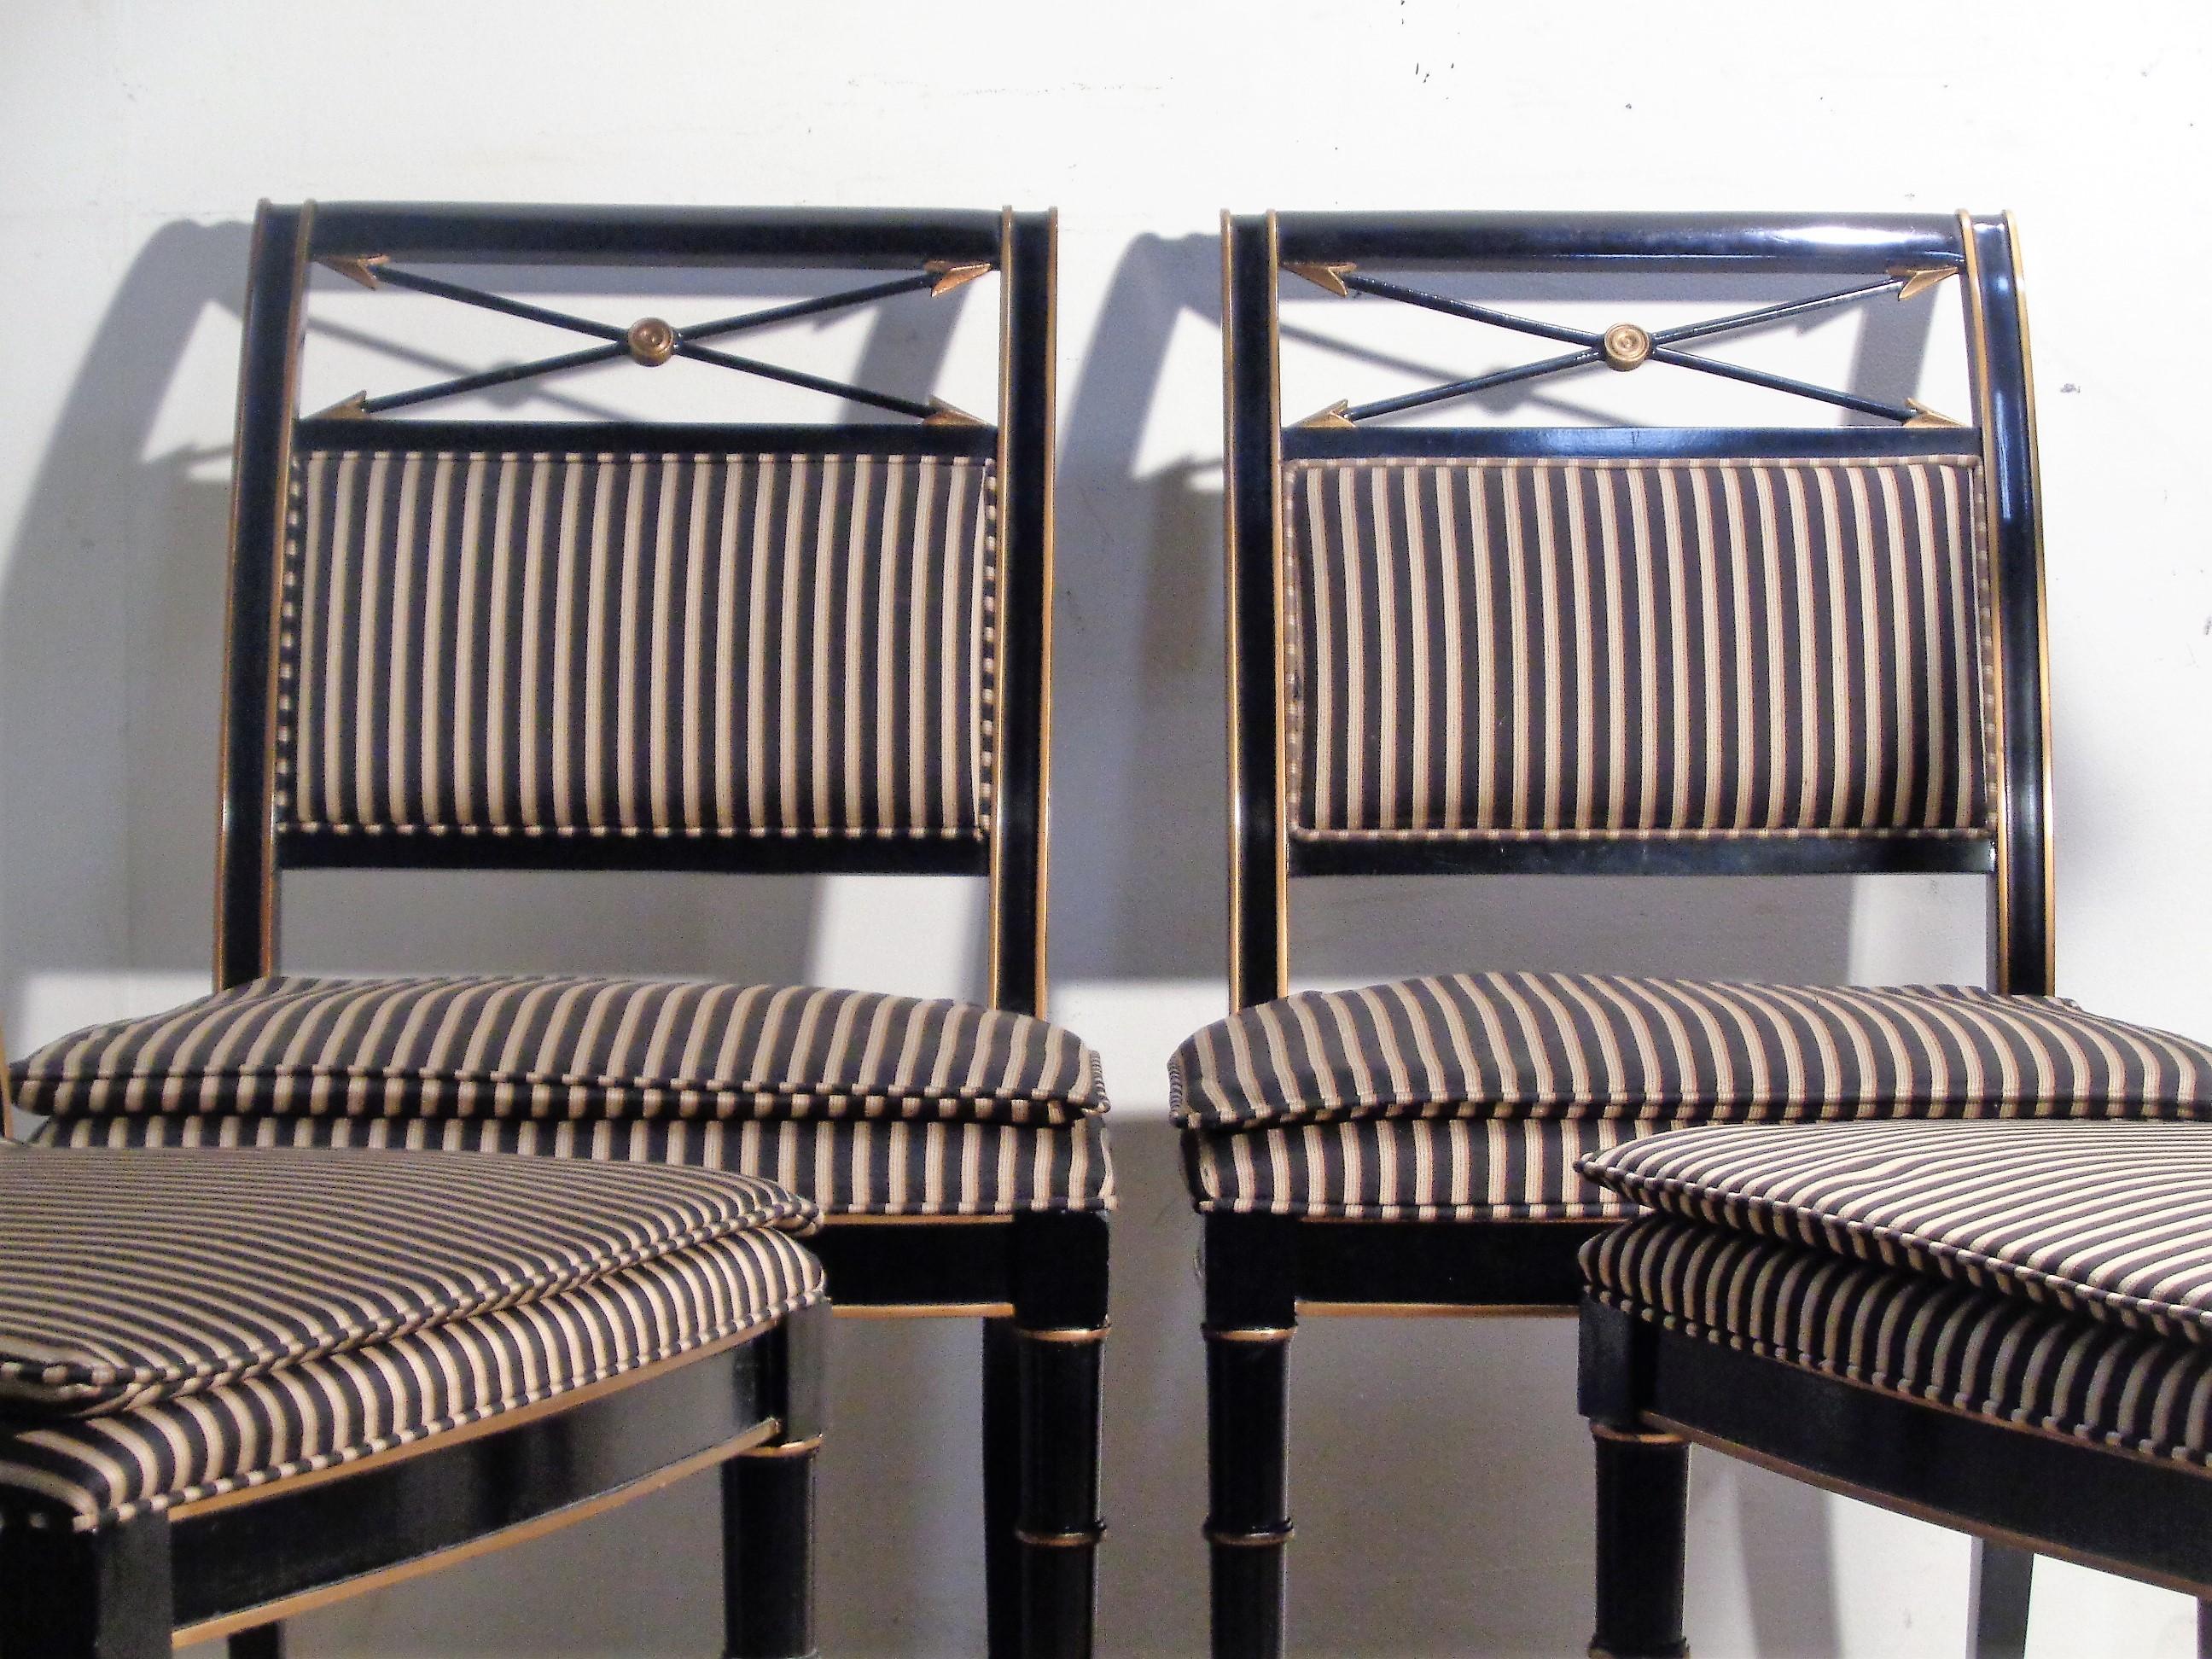 Satz von vier neoklassischen Stühlen im Regency-Stil mit wunderschön gestreiften gepolsterten Sitzen und Rückenlehnen, gedrechselten Beinen aus Bambusimitat und vergoldeten gekreuzten Pfeilen an der oberen Rückenlehne. Alle original schwarz lackiert